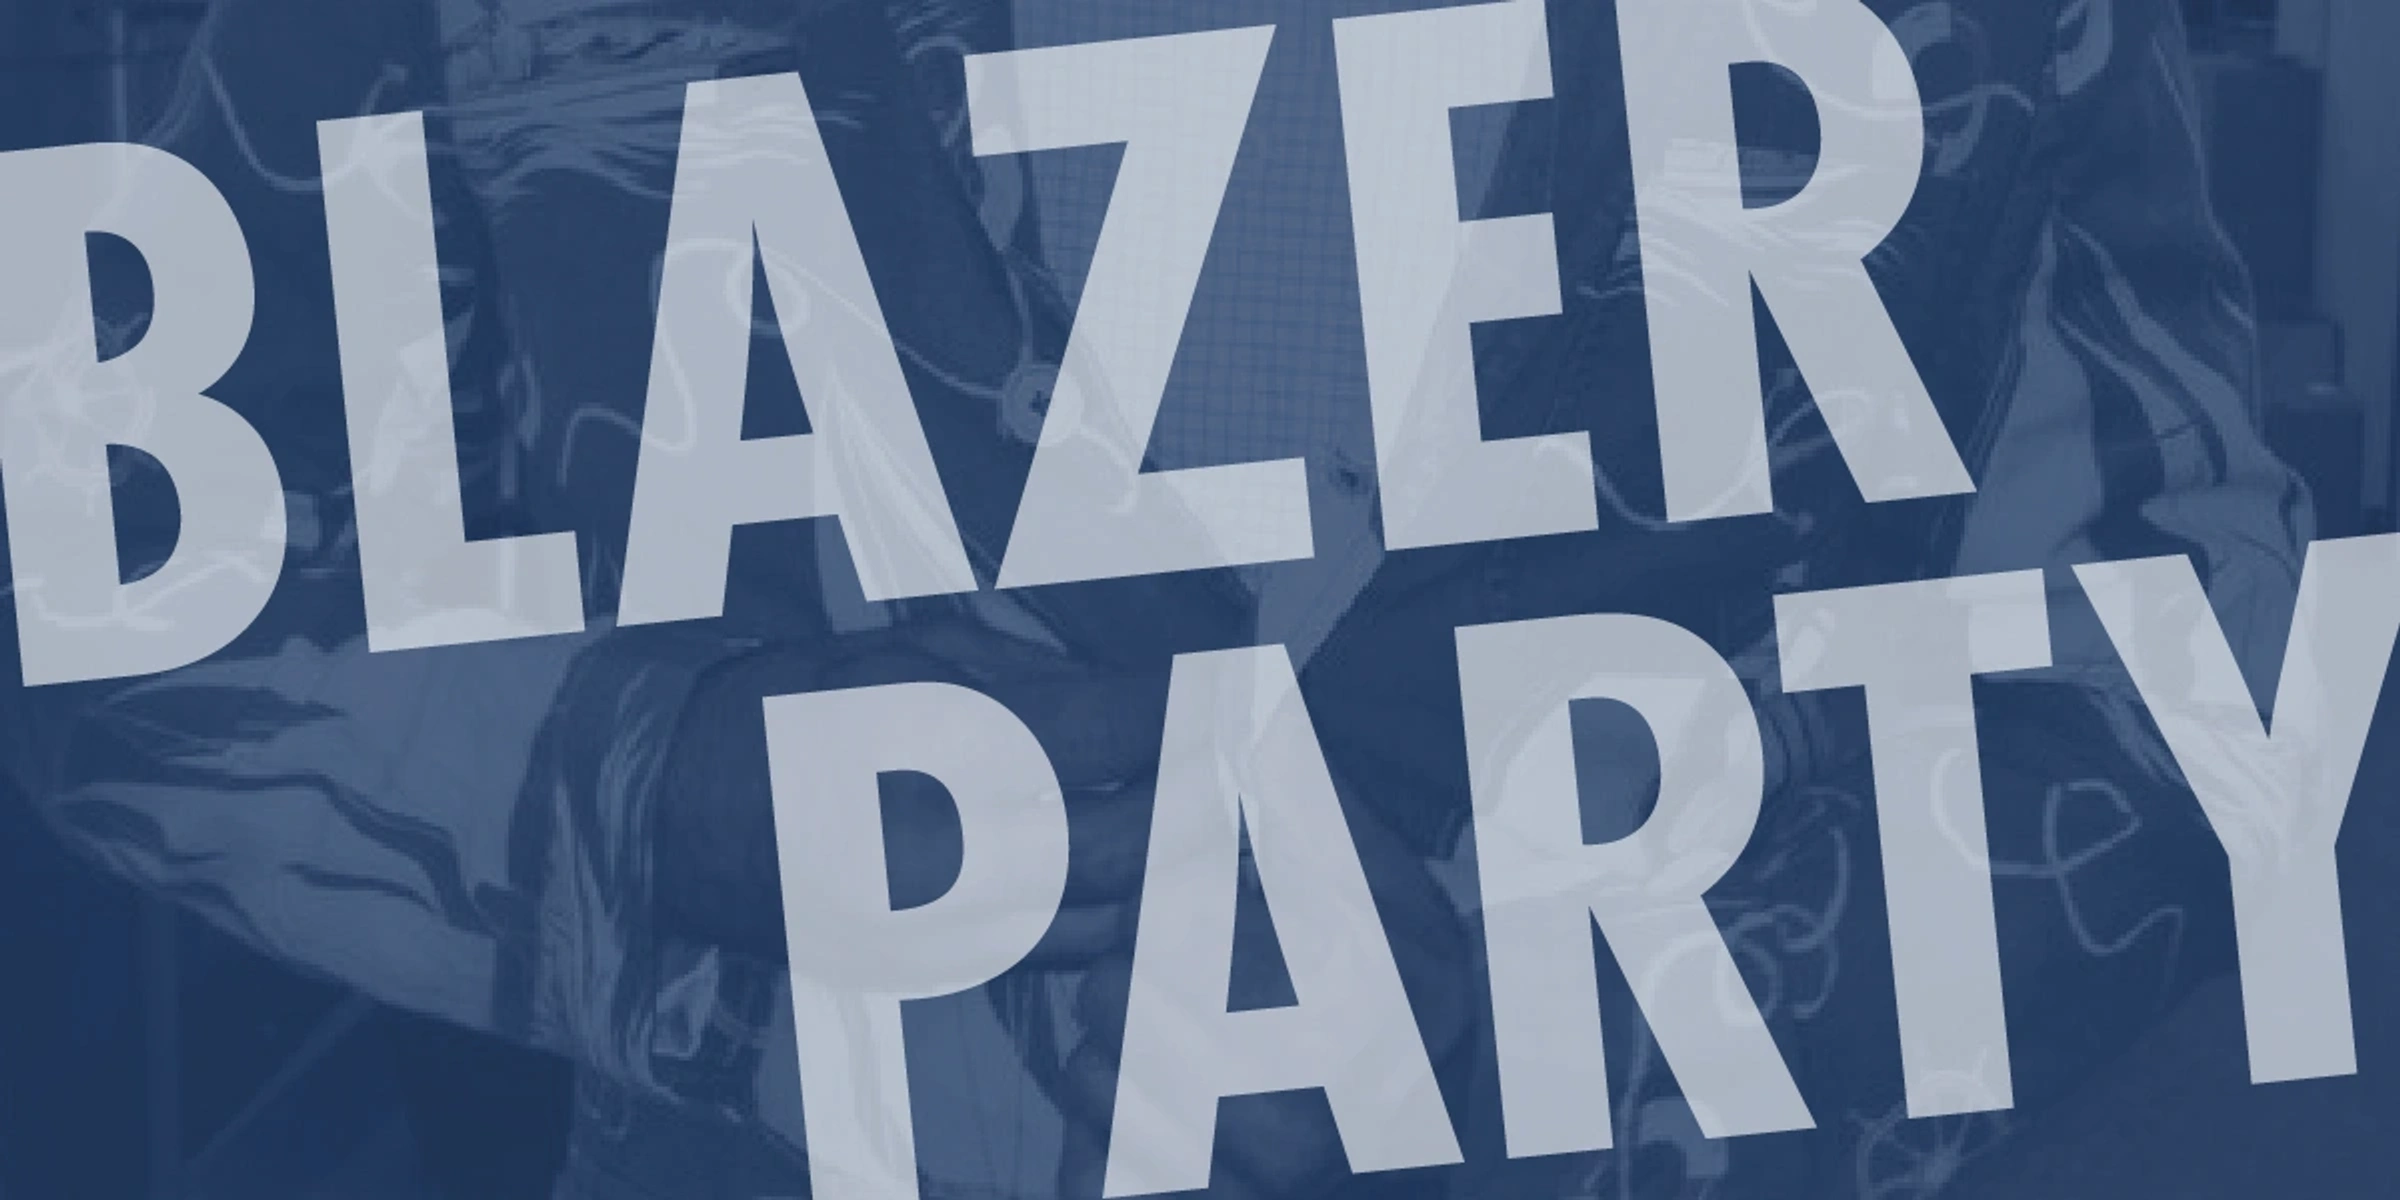 Blazer Party Eventbrite Header 2